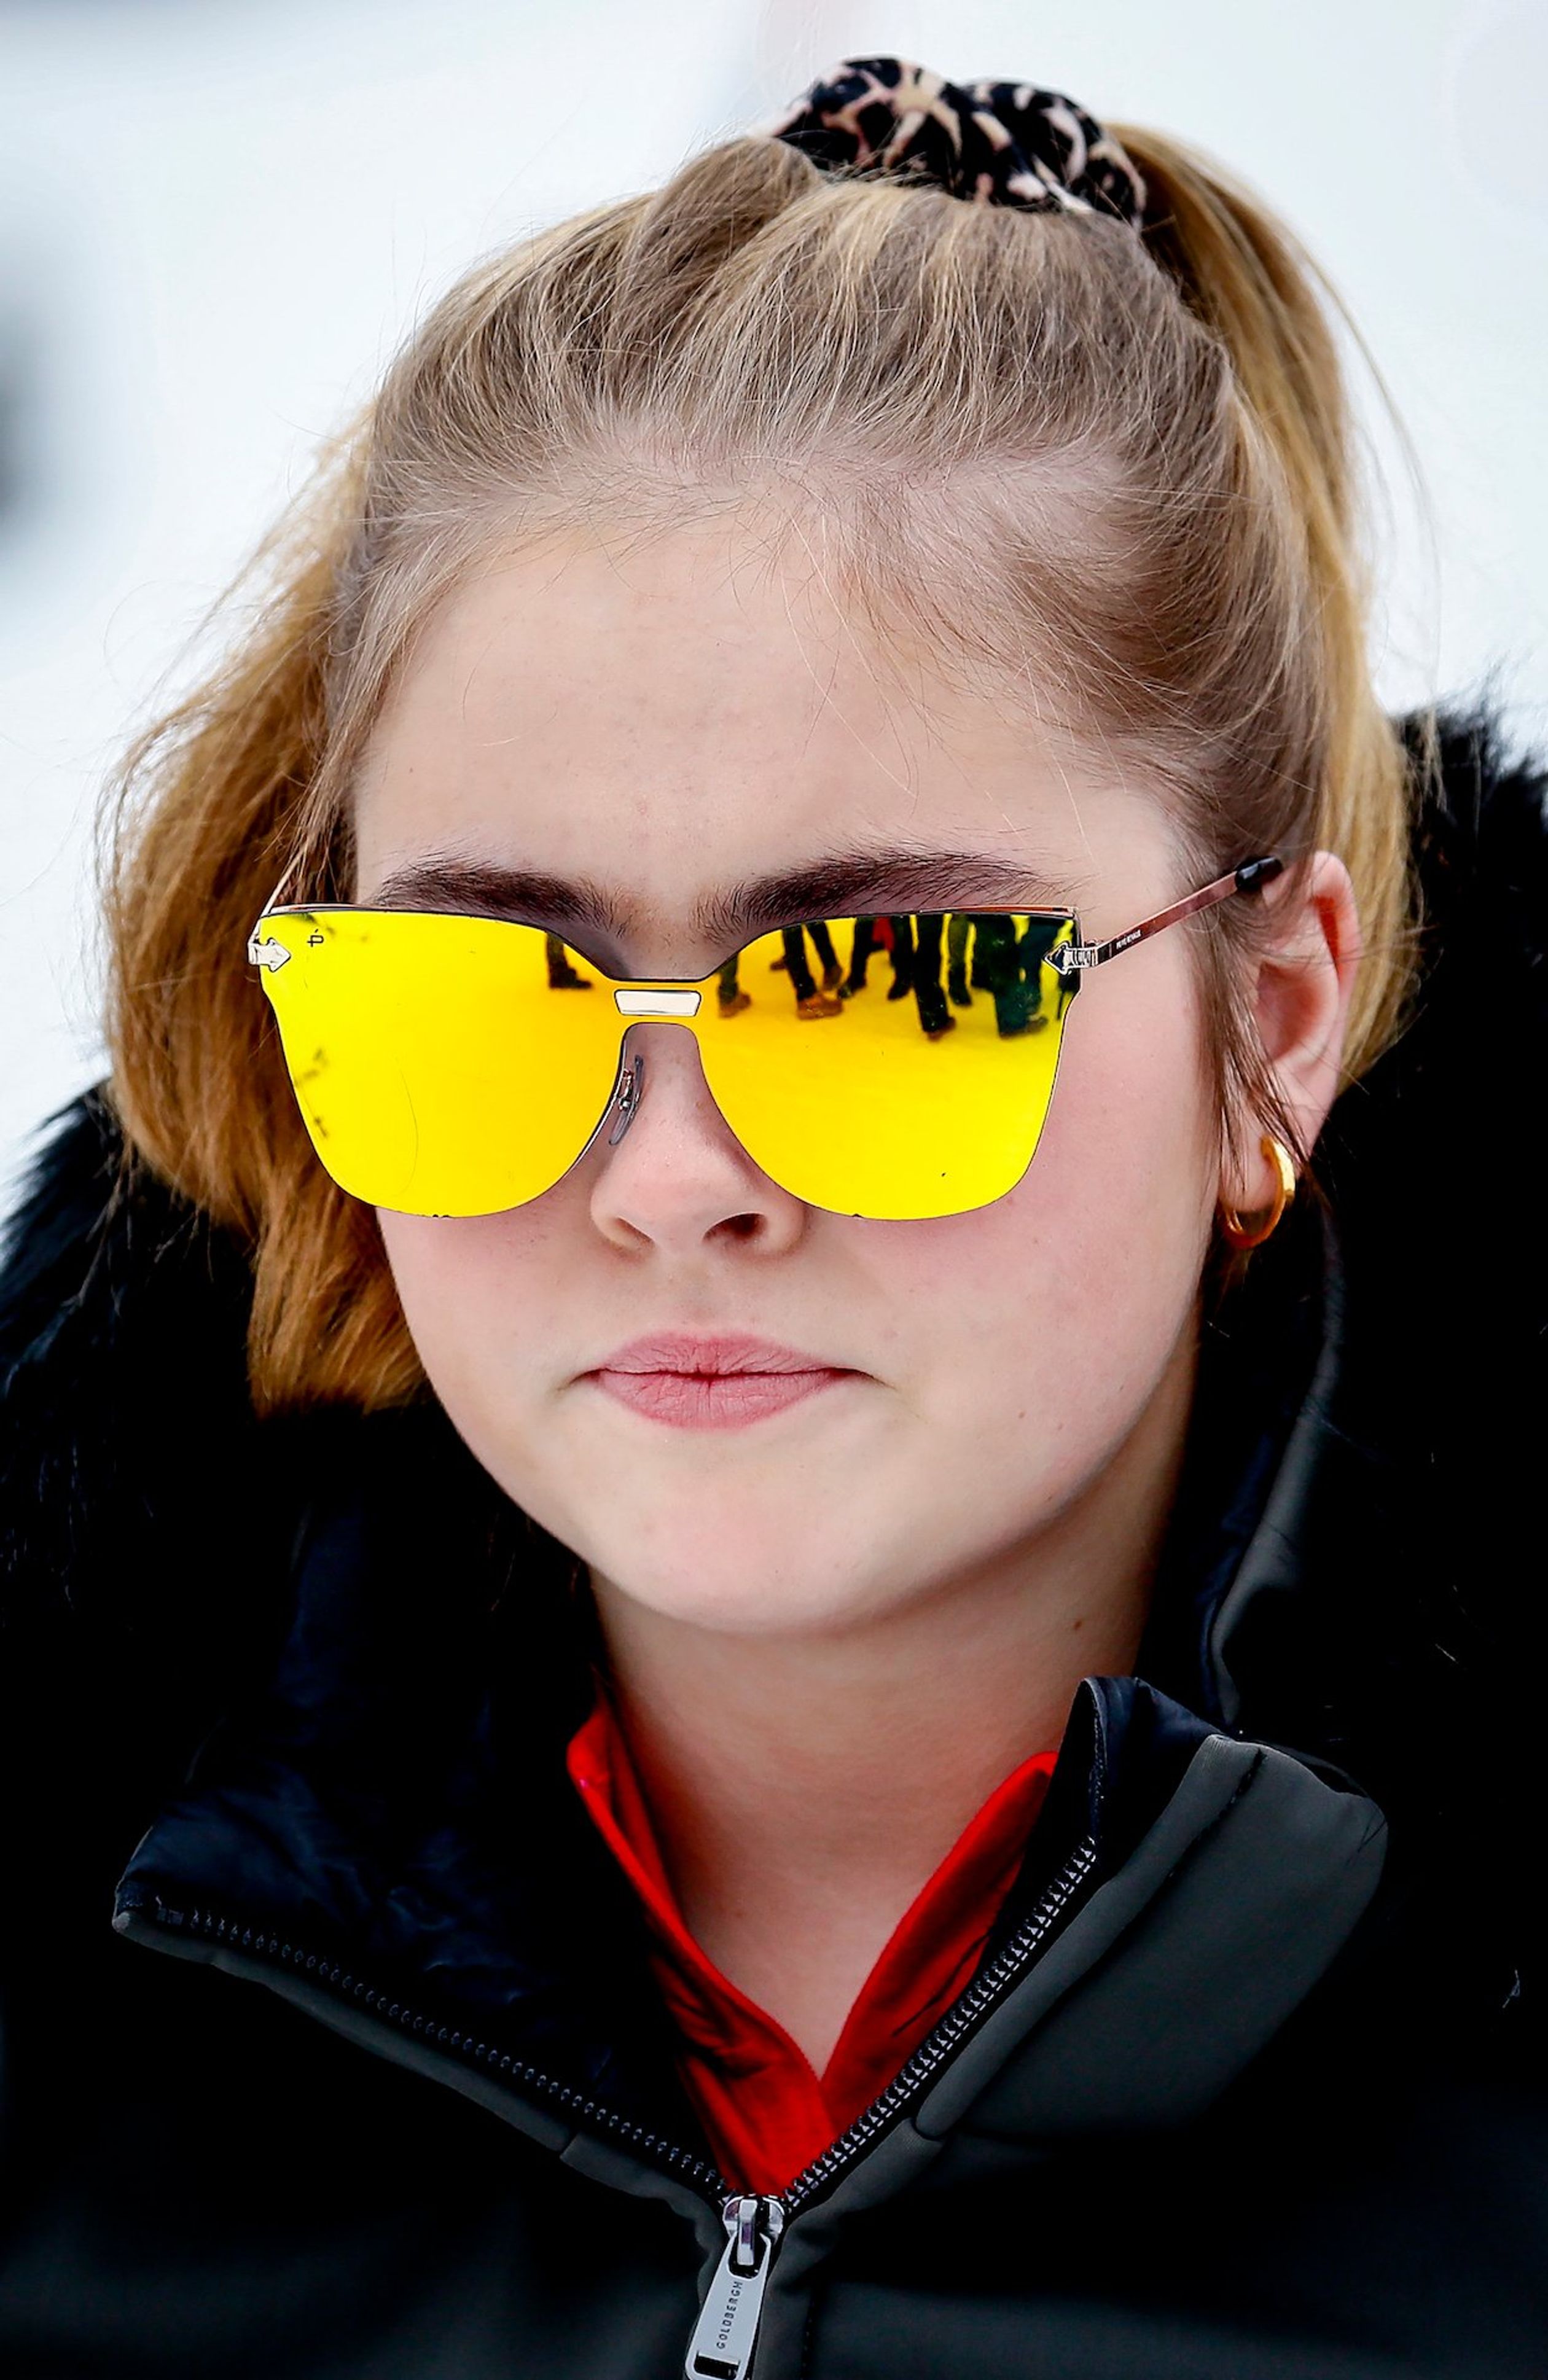 Prinses Amalia koos dit jaar voor een stoere zonnebril met reflecterende glazen.